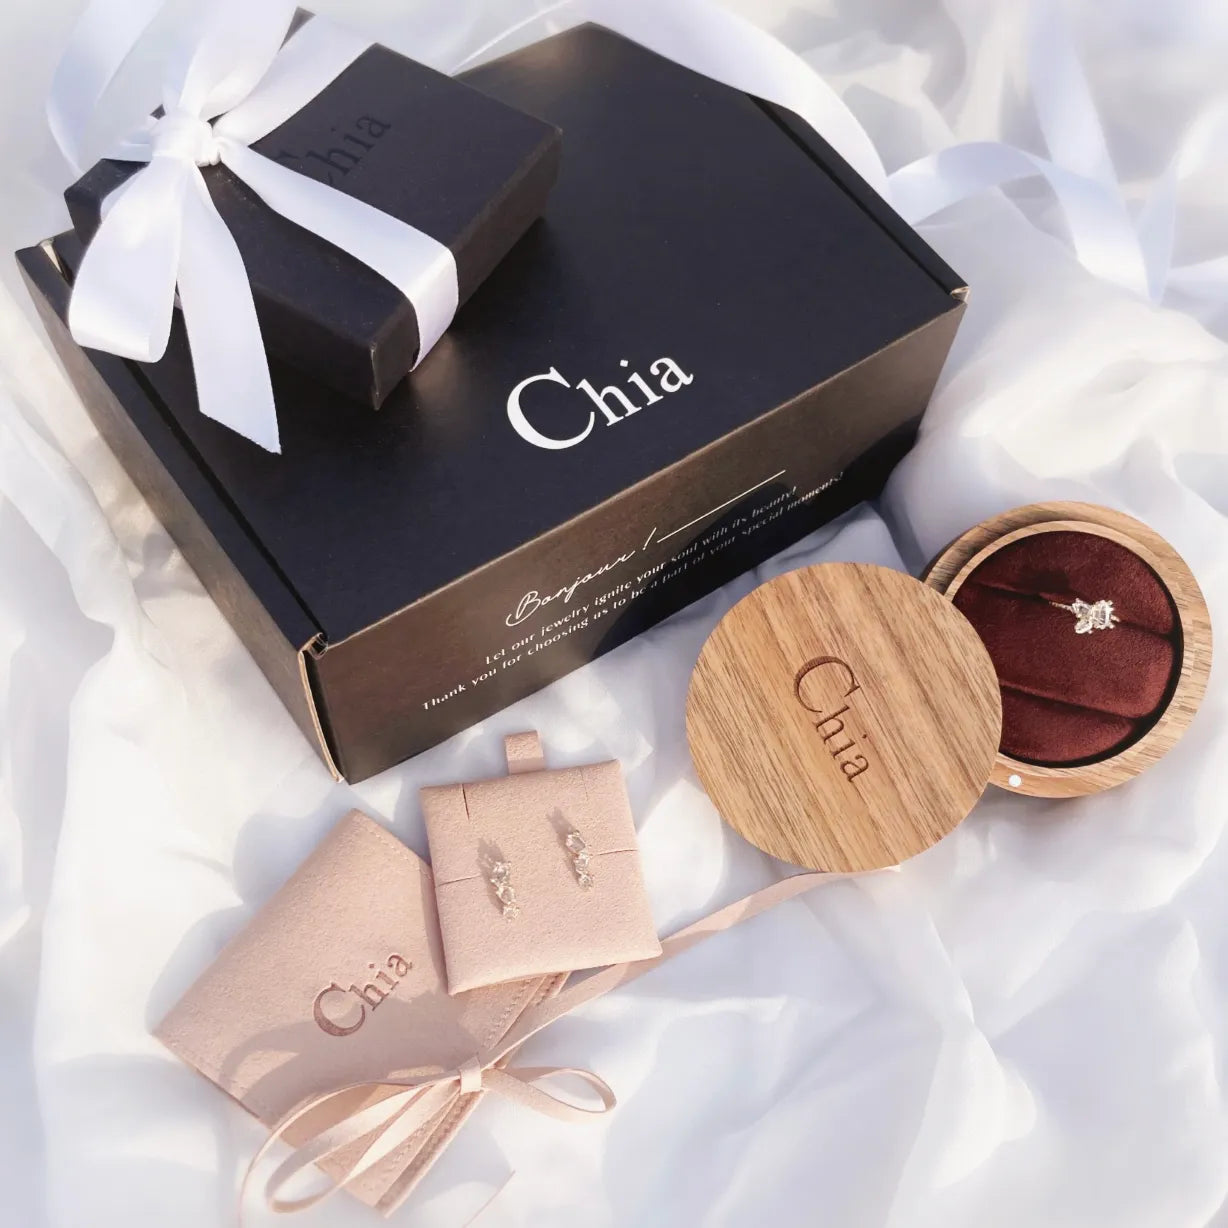 chia jewelry輕珠寶首飾包裝禮盒與木製婚戒盒